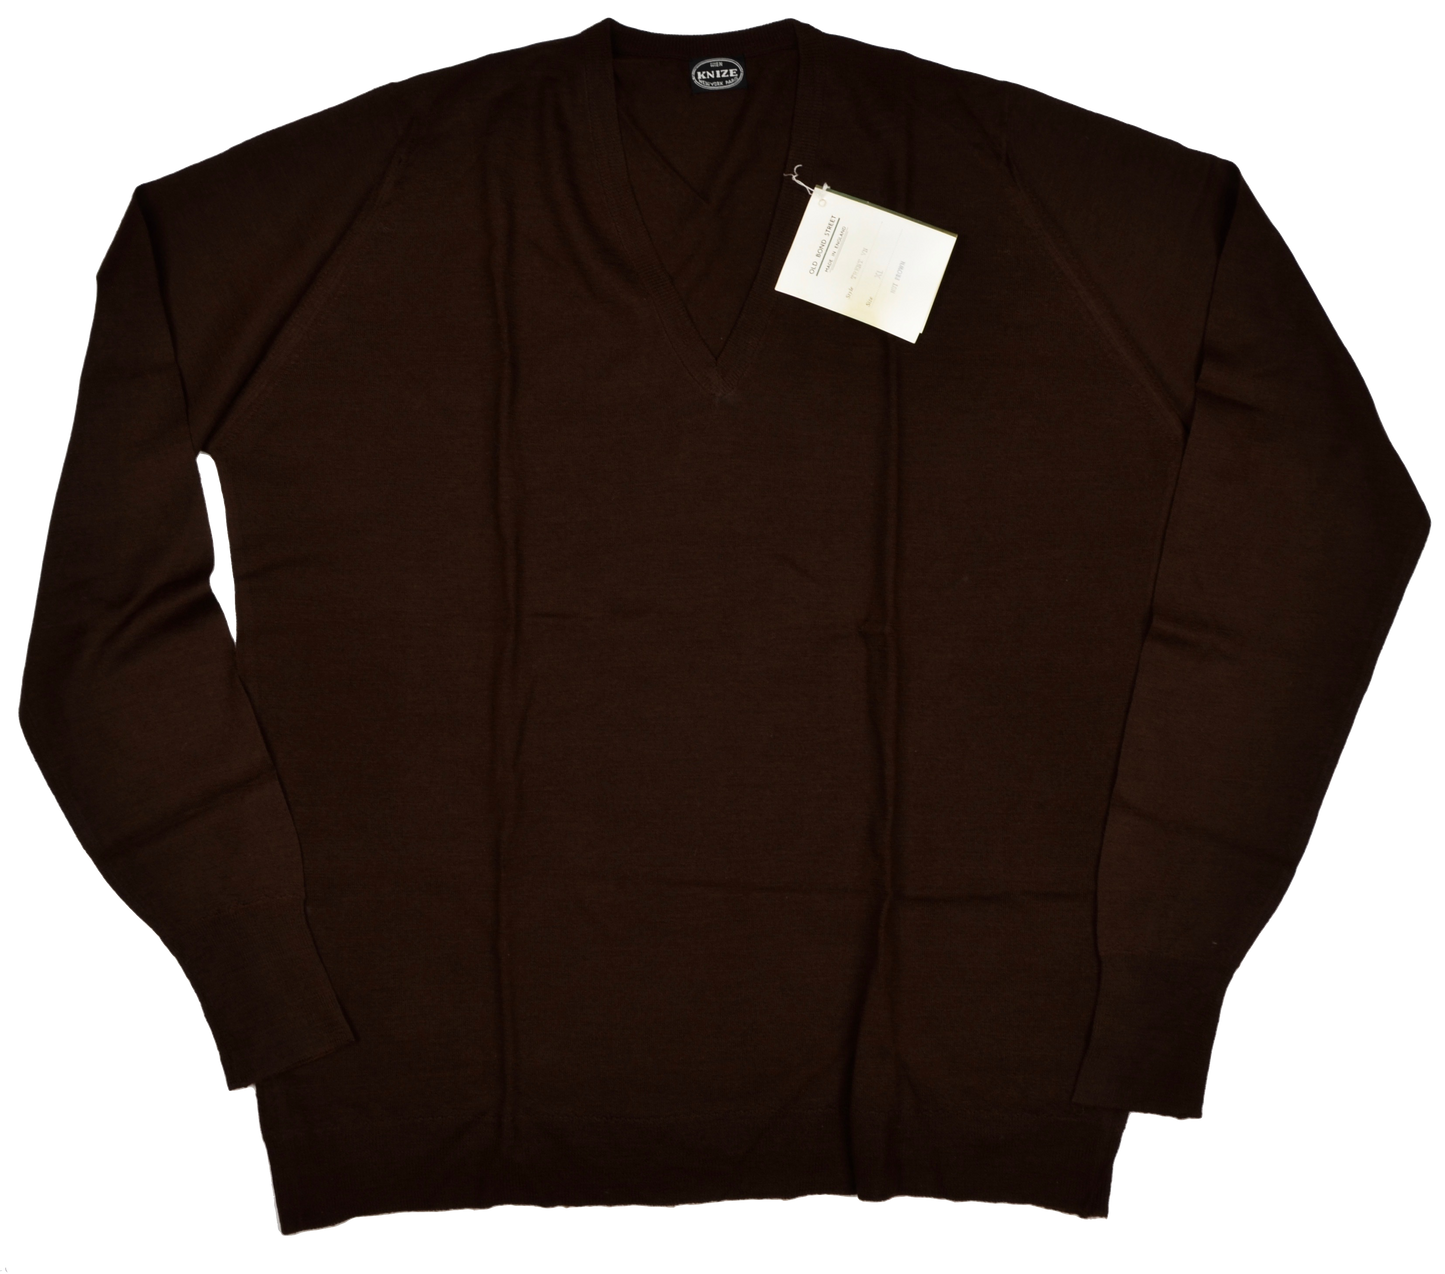 Knize Wien V-Neck Wool Sweater XL - Nut Brown